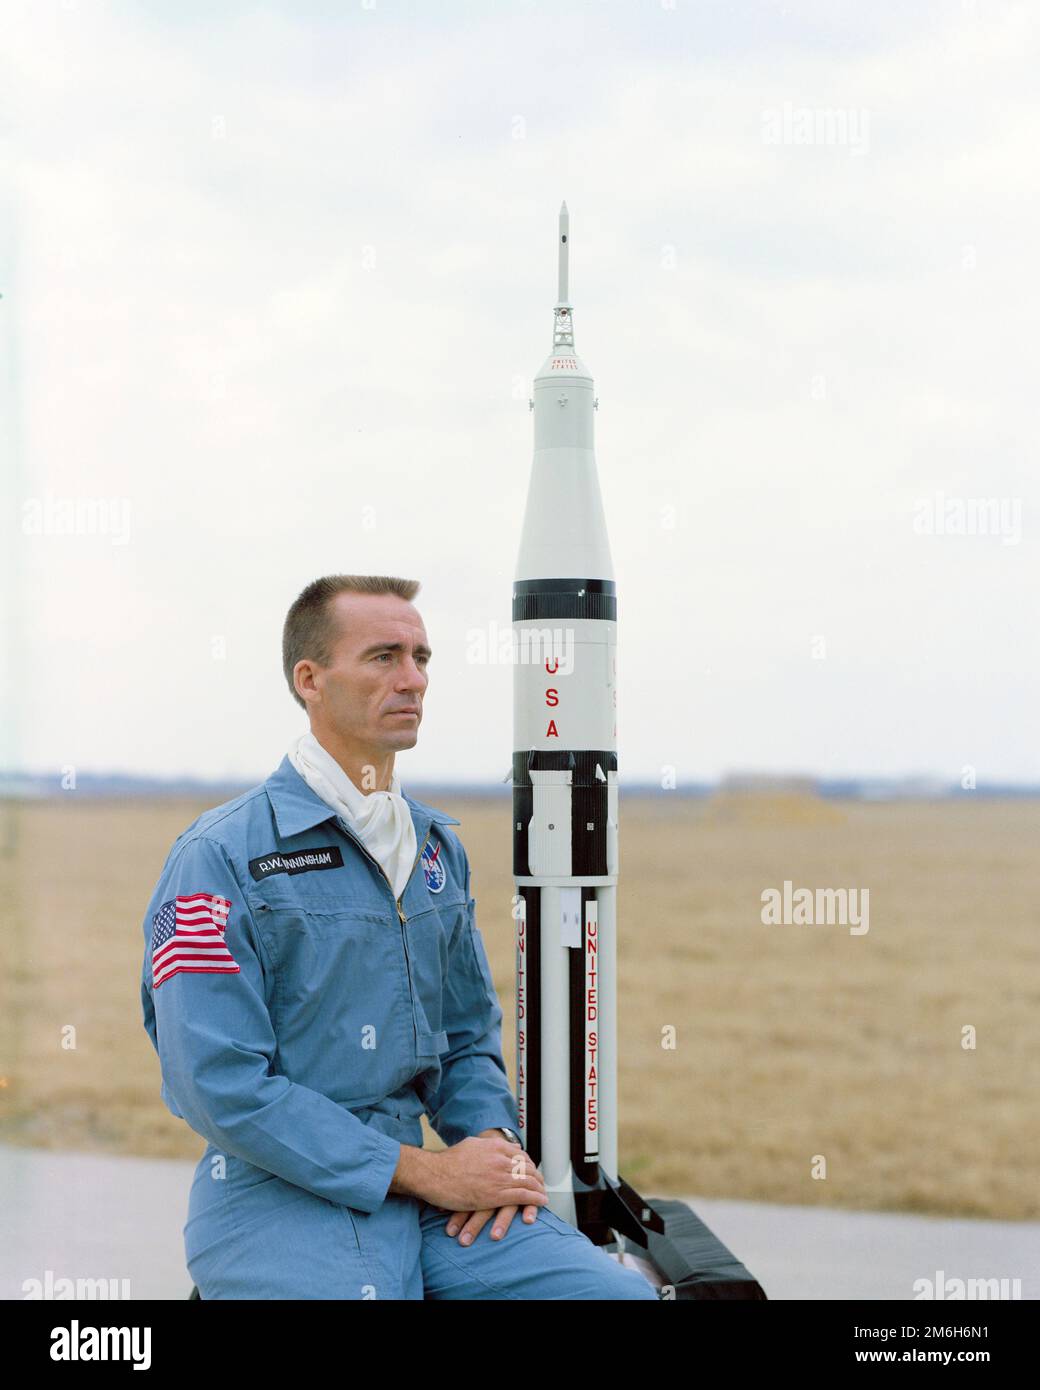 Cape Canaveral, États-Unis. 04 janvier 2023. Walter Cunningham, astronaute de la NASA, pilote de module lunaire pour la mission Apollo 7, pose avec un modèle de la fusée Apollo 7 Saturne au Centre spatial Kennedy, à 13 février 1968, au Cap Canaveral, en Floride. Cunningham meurt 4 janvier 2023 à l'âge de 90 ans, le dernier membre survivant de la mission Apollo 7 de la NASA. Banque D'Images